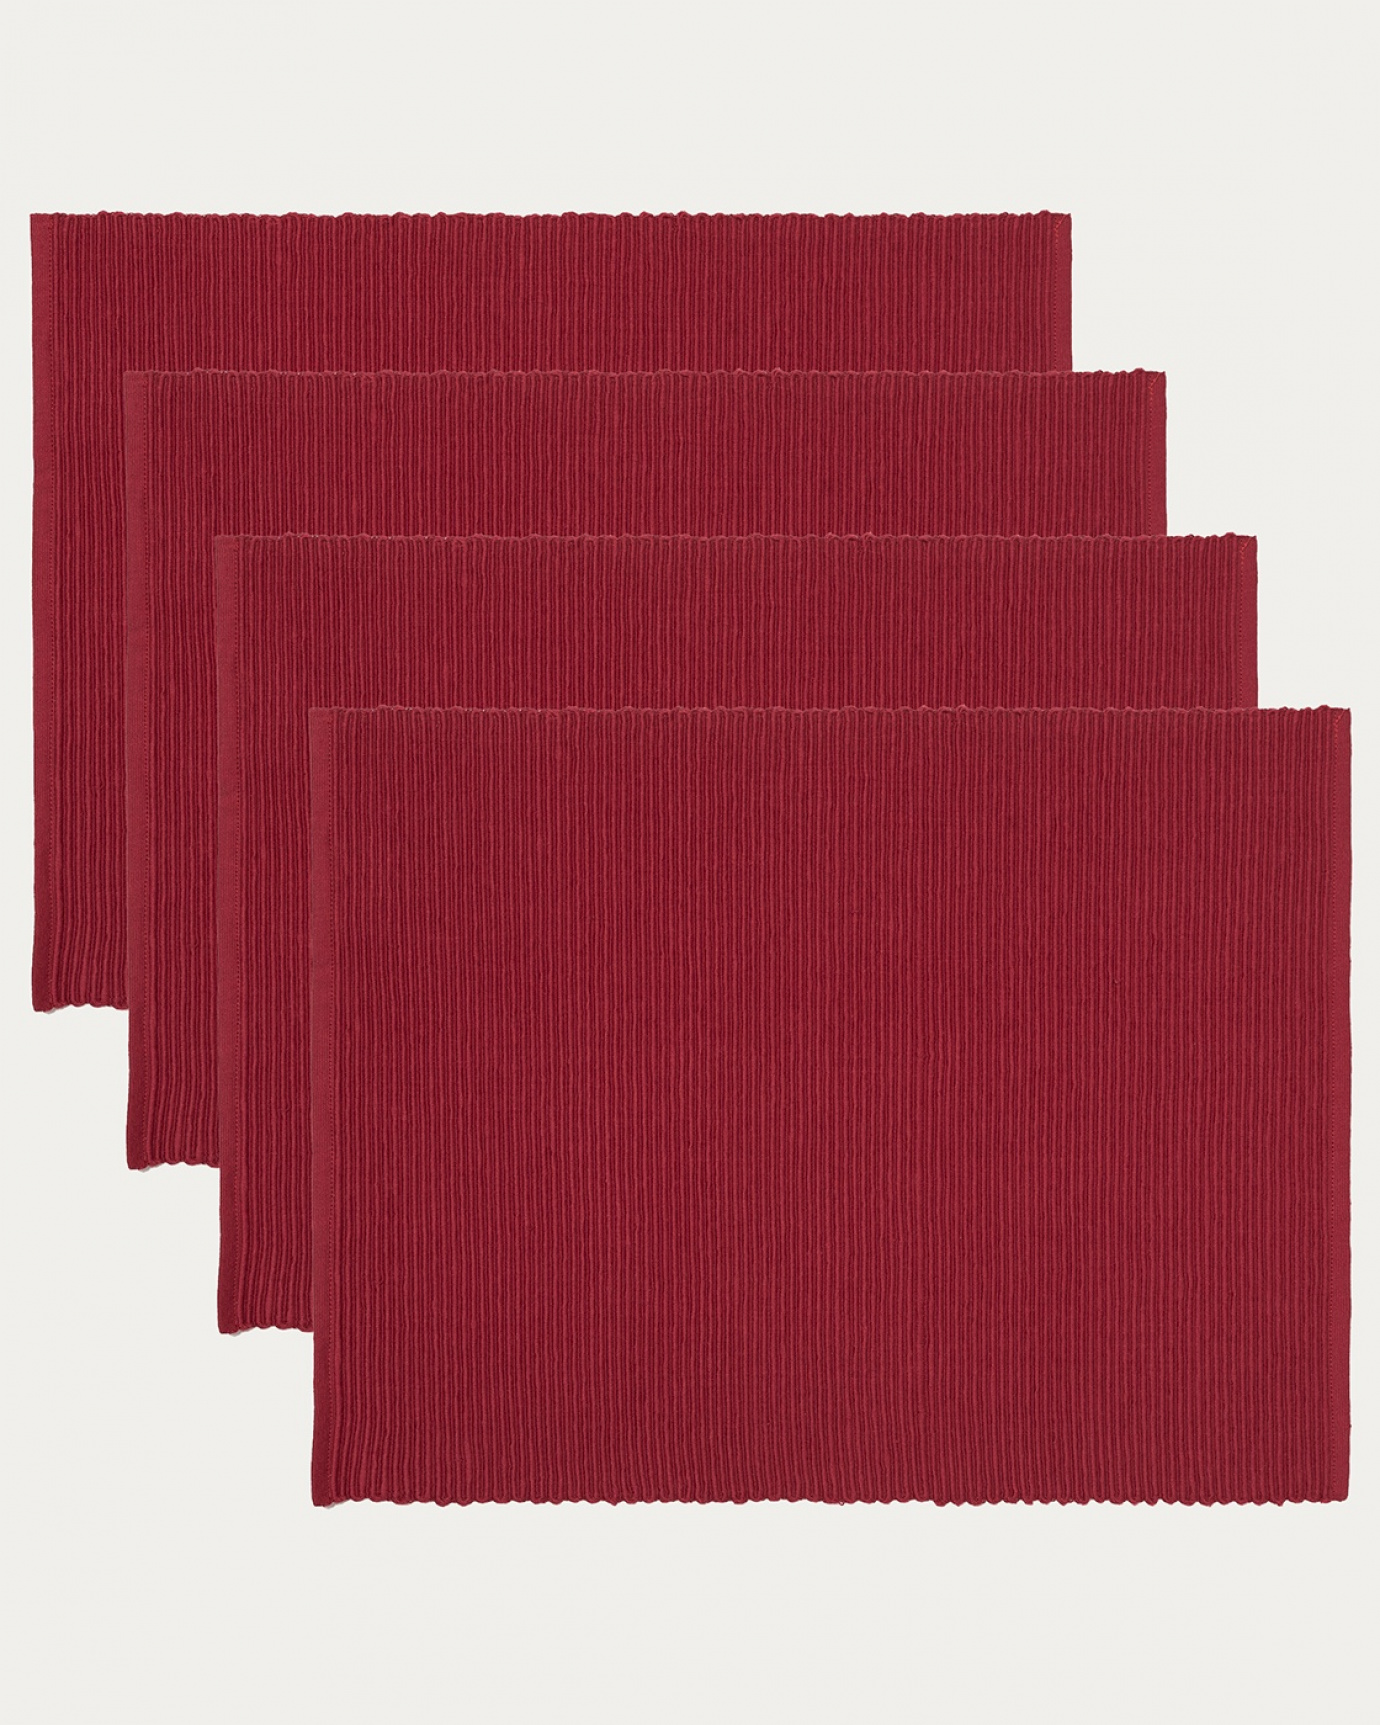 Immagine prodotto rosso tovaglietta UNI in morbido cotone a costine di qualità di LINUM DESIGN. Dimensioni 35x46 cm e venduto in 4-pezzi.